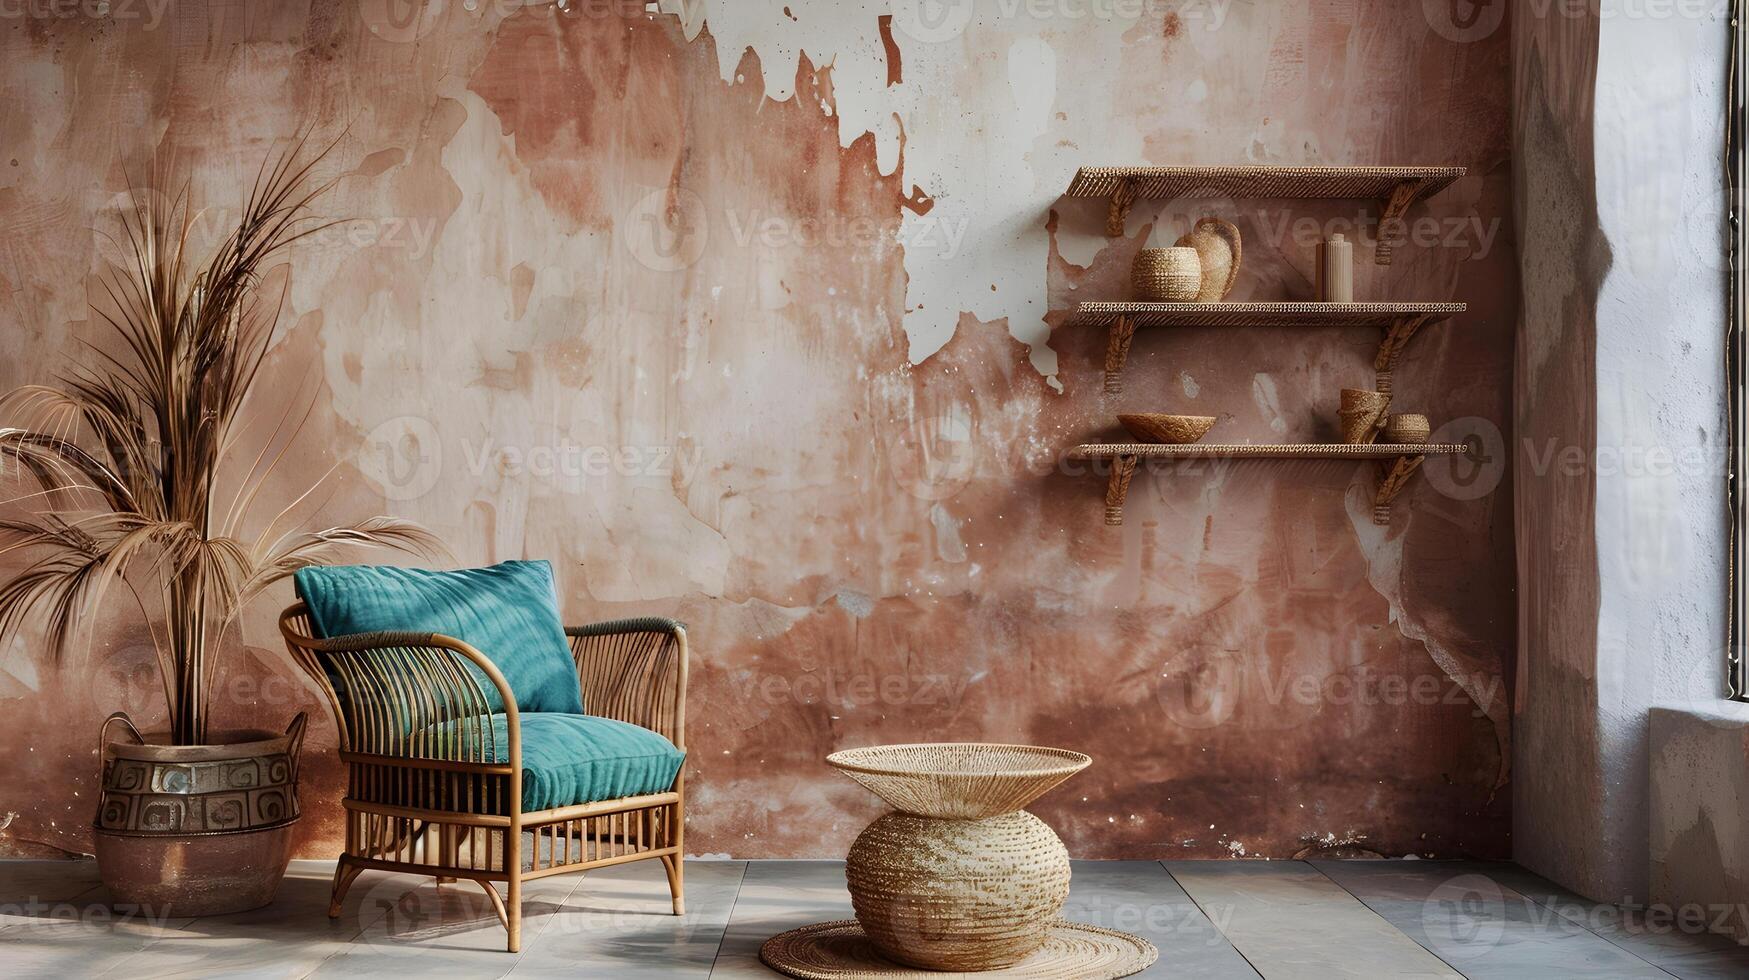 rustique rotin chaise avec confortable coussins dans charmant abandonné intérieur avec patiné des murs et Naturel décor éléments photo